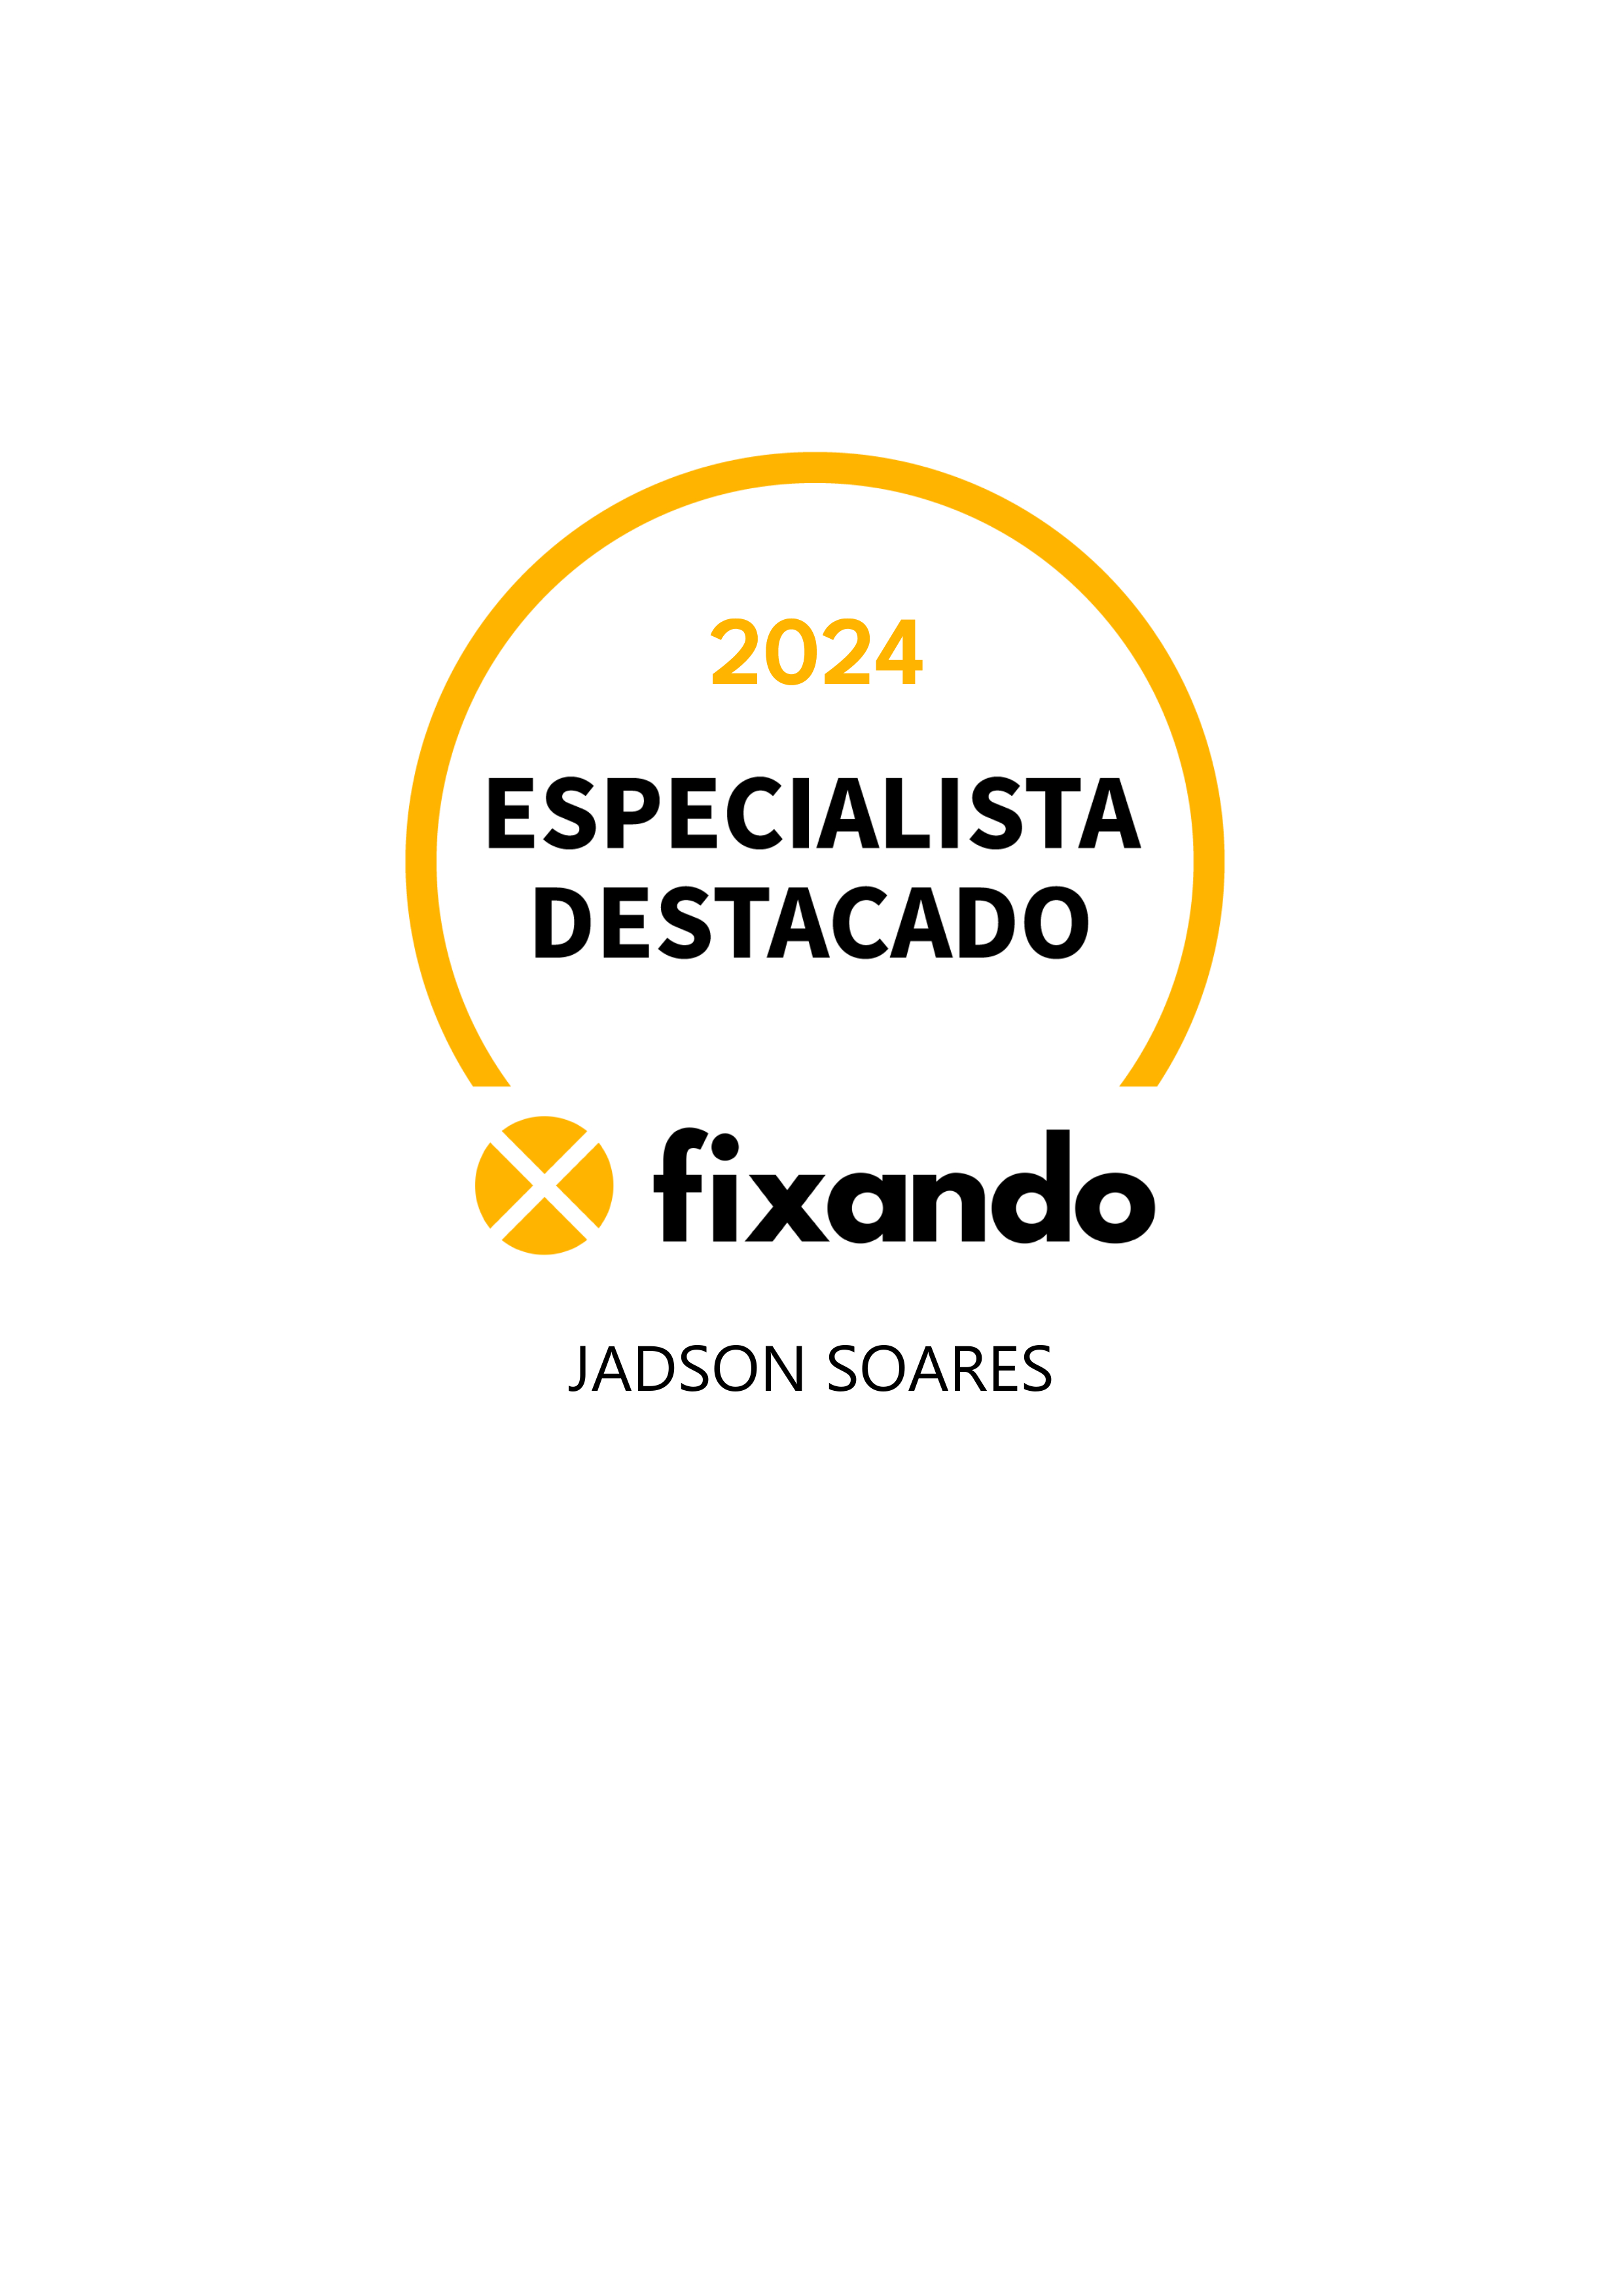 Jadson Soares - Coimbra - Instalação de Pavimento em Pedra ou Ladrilho